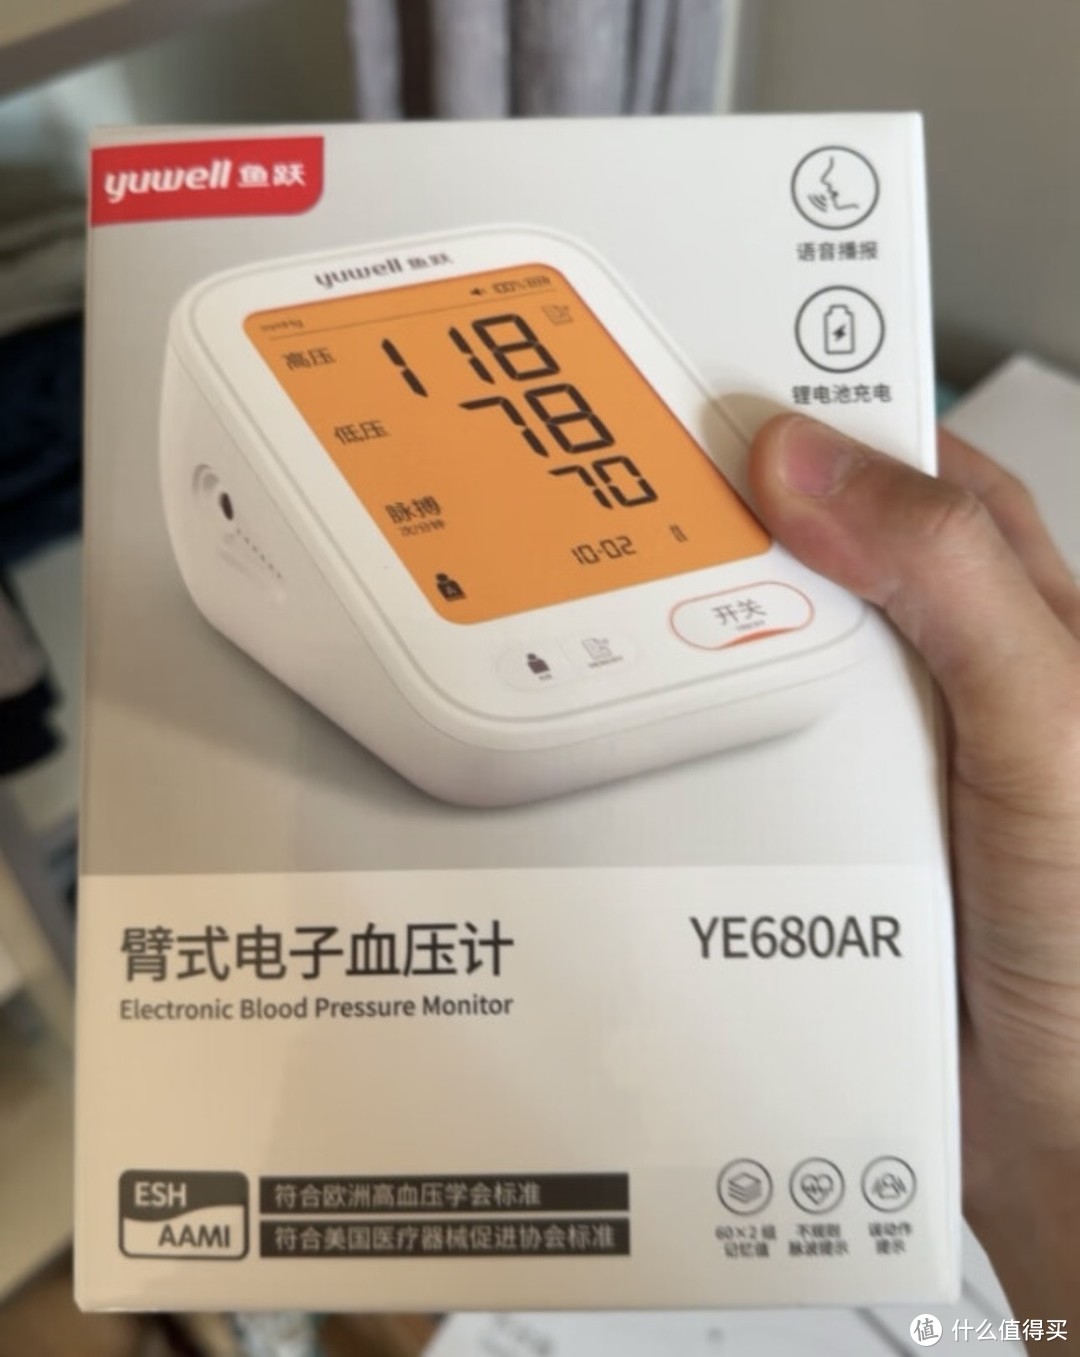 鱼跃(yuwell)电子血压计上臂式血压仪家用双组记忆智能预警医用插电测血压测量仪YE